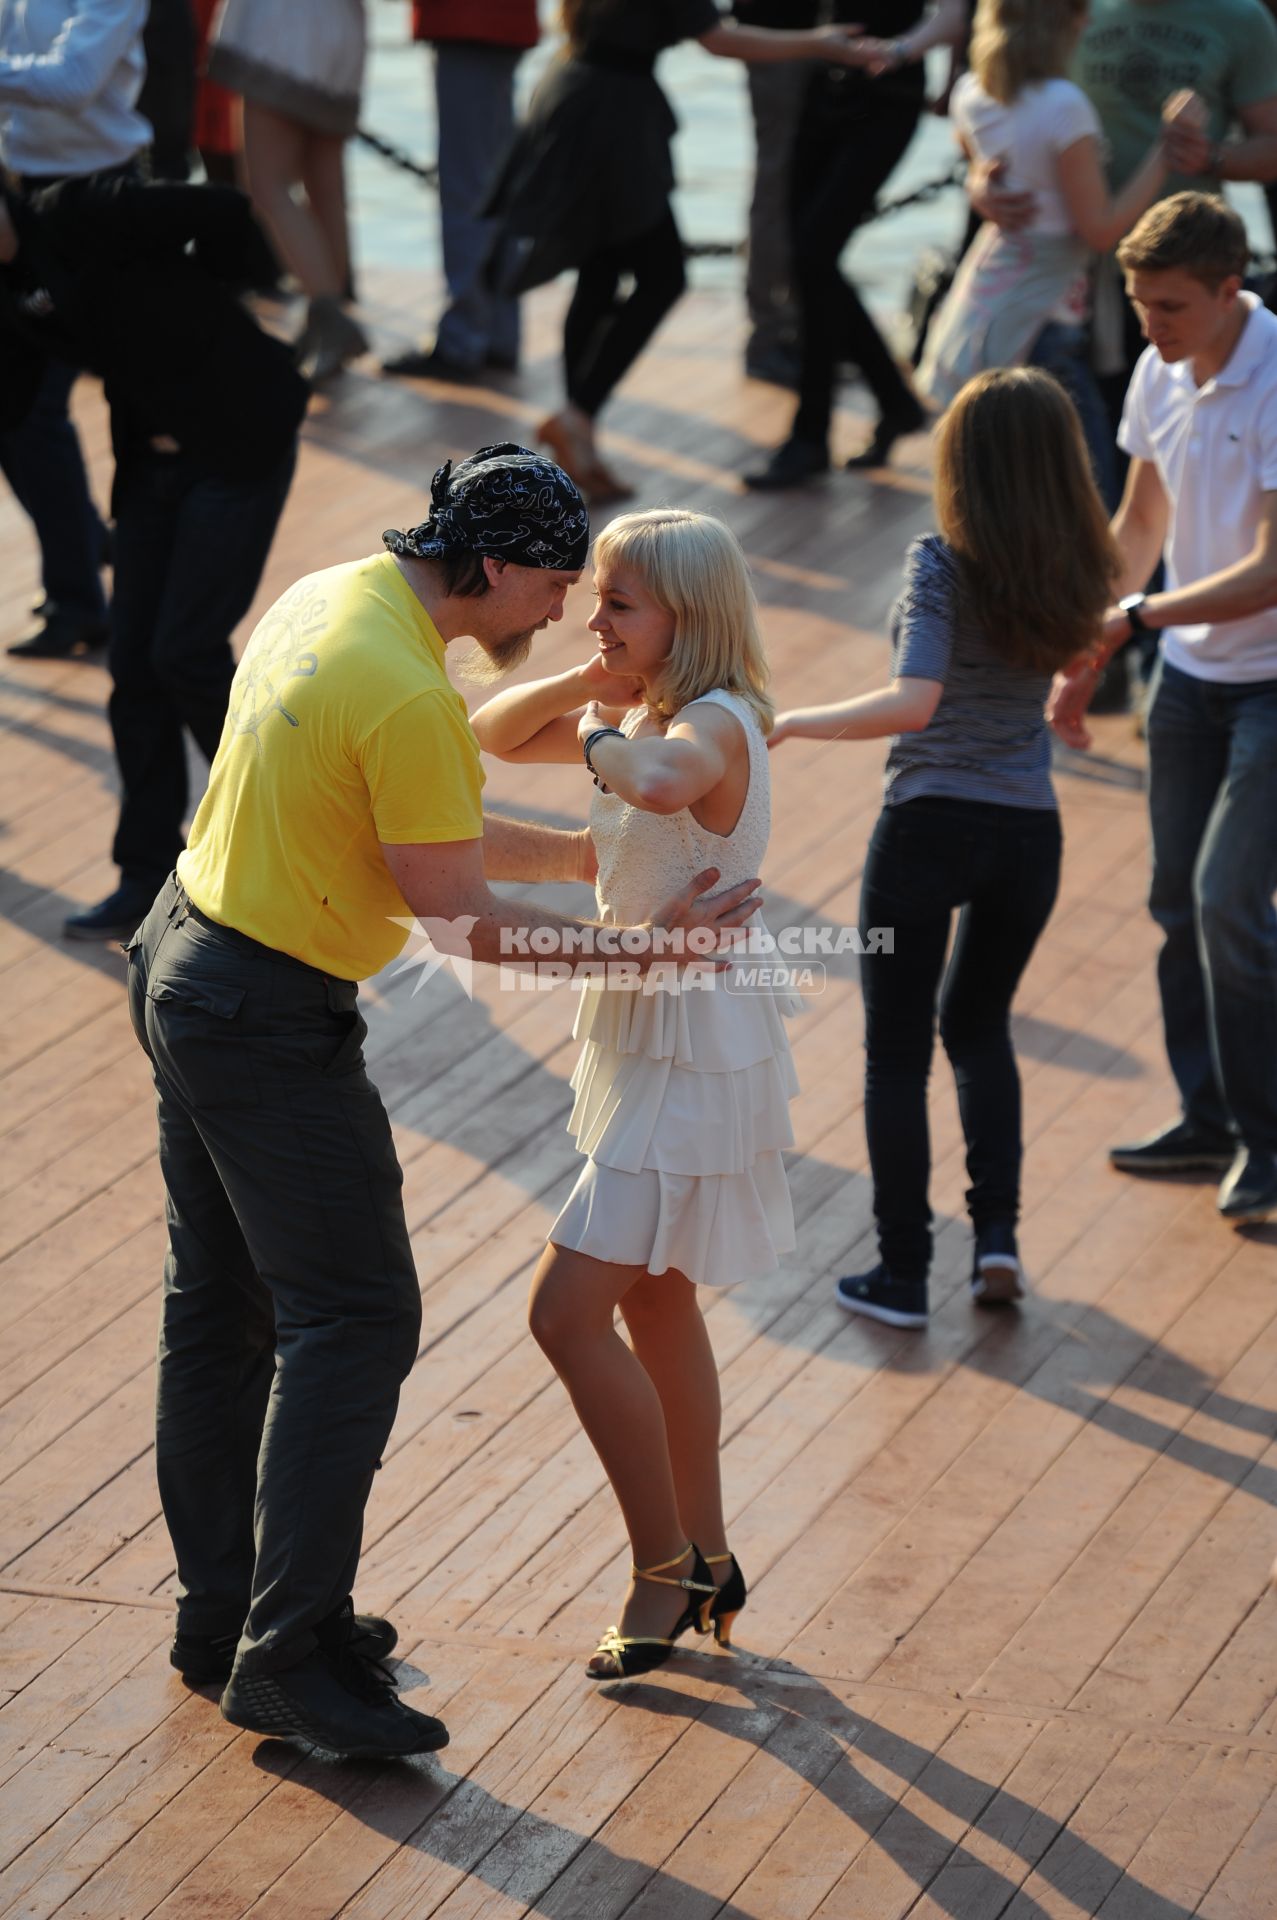 Парк Горького. На снимке: молодые люди во время танца.